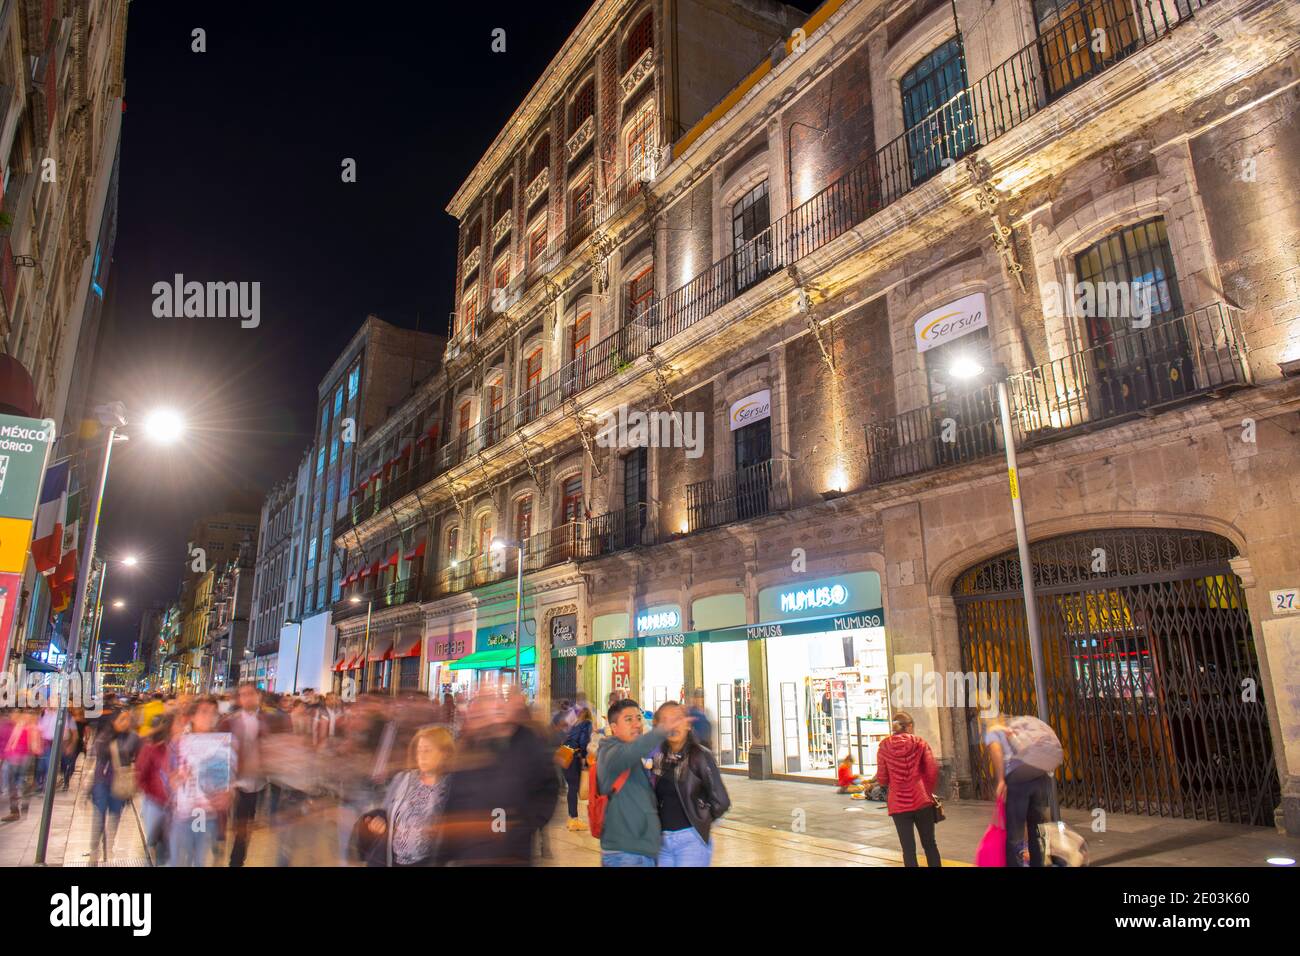 Historic buildings on Avenida Francisco Madero at Calle de Simon Bolivar Street at night, Mexico City CDMX, Mexico. Stock Photo